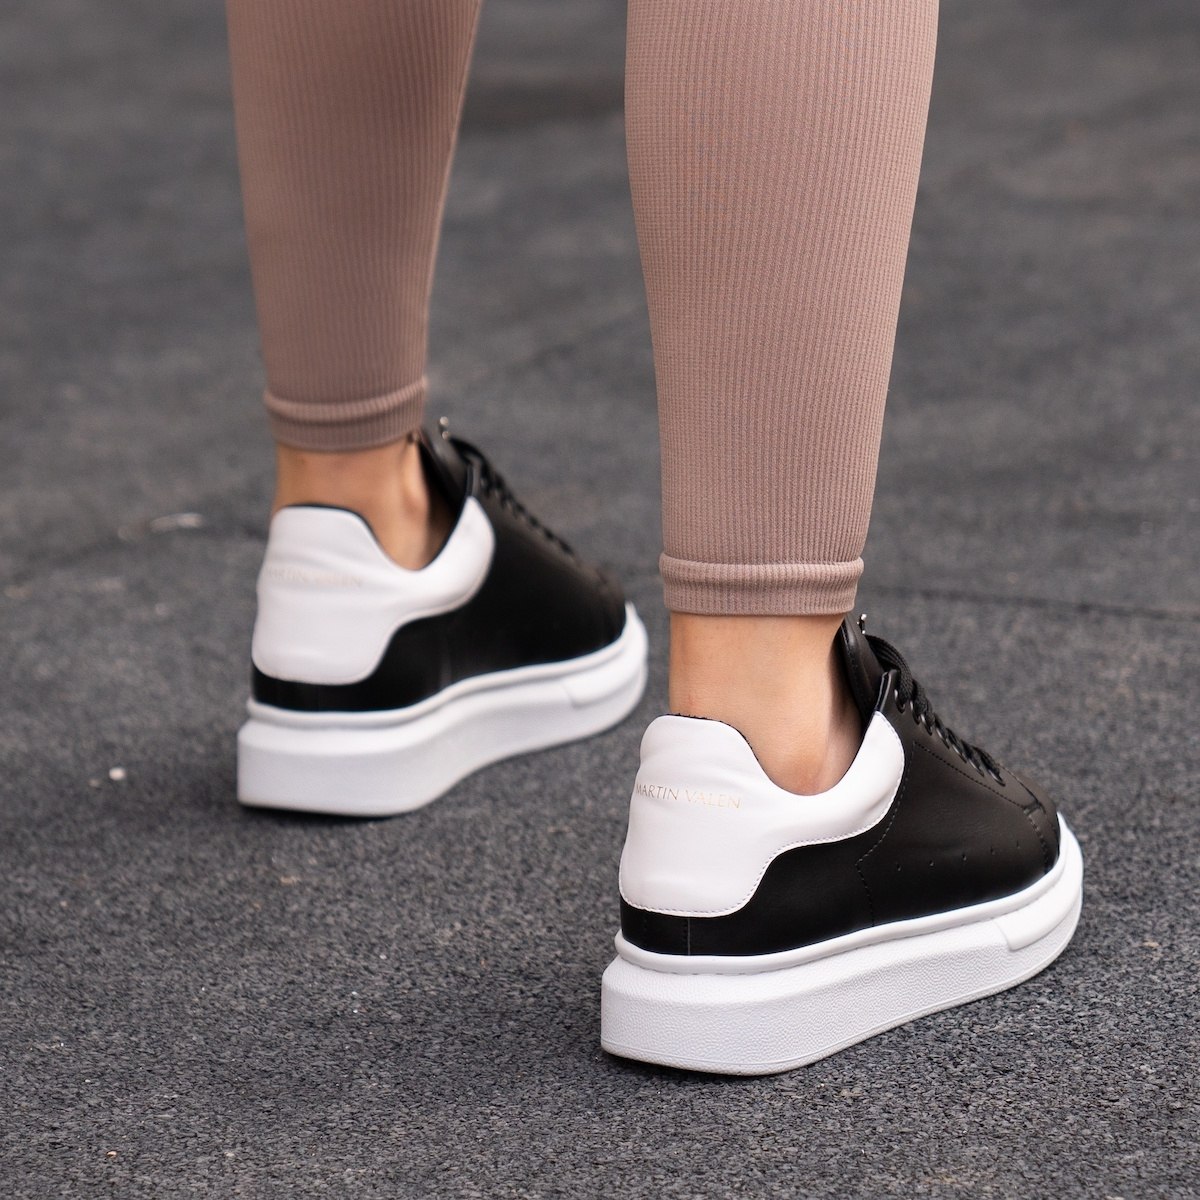 Zapatillas para Mujer de Suela Alta con Corona en Negro y Blanco | Martin Valen